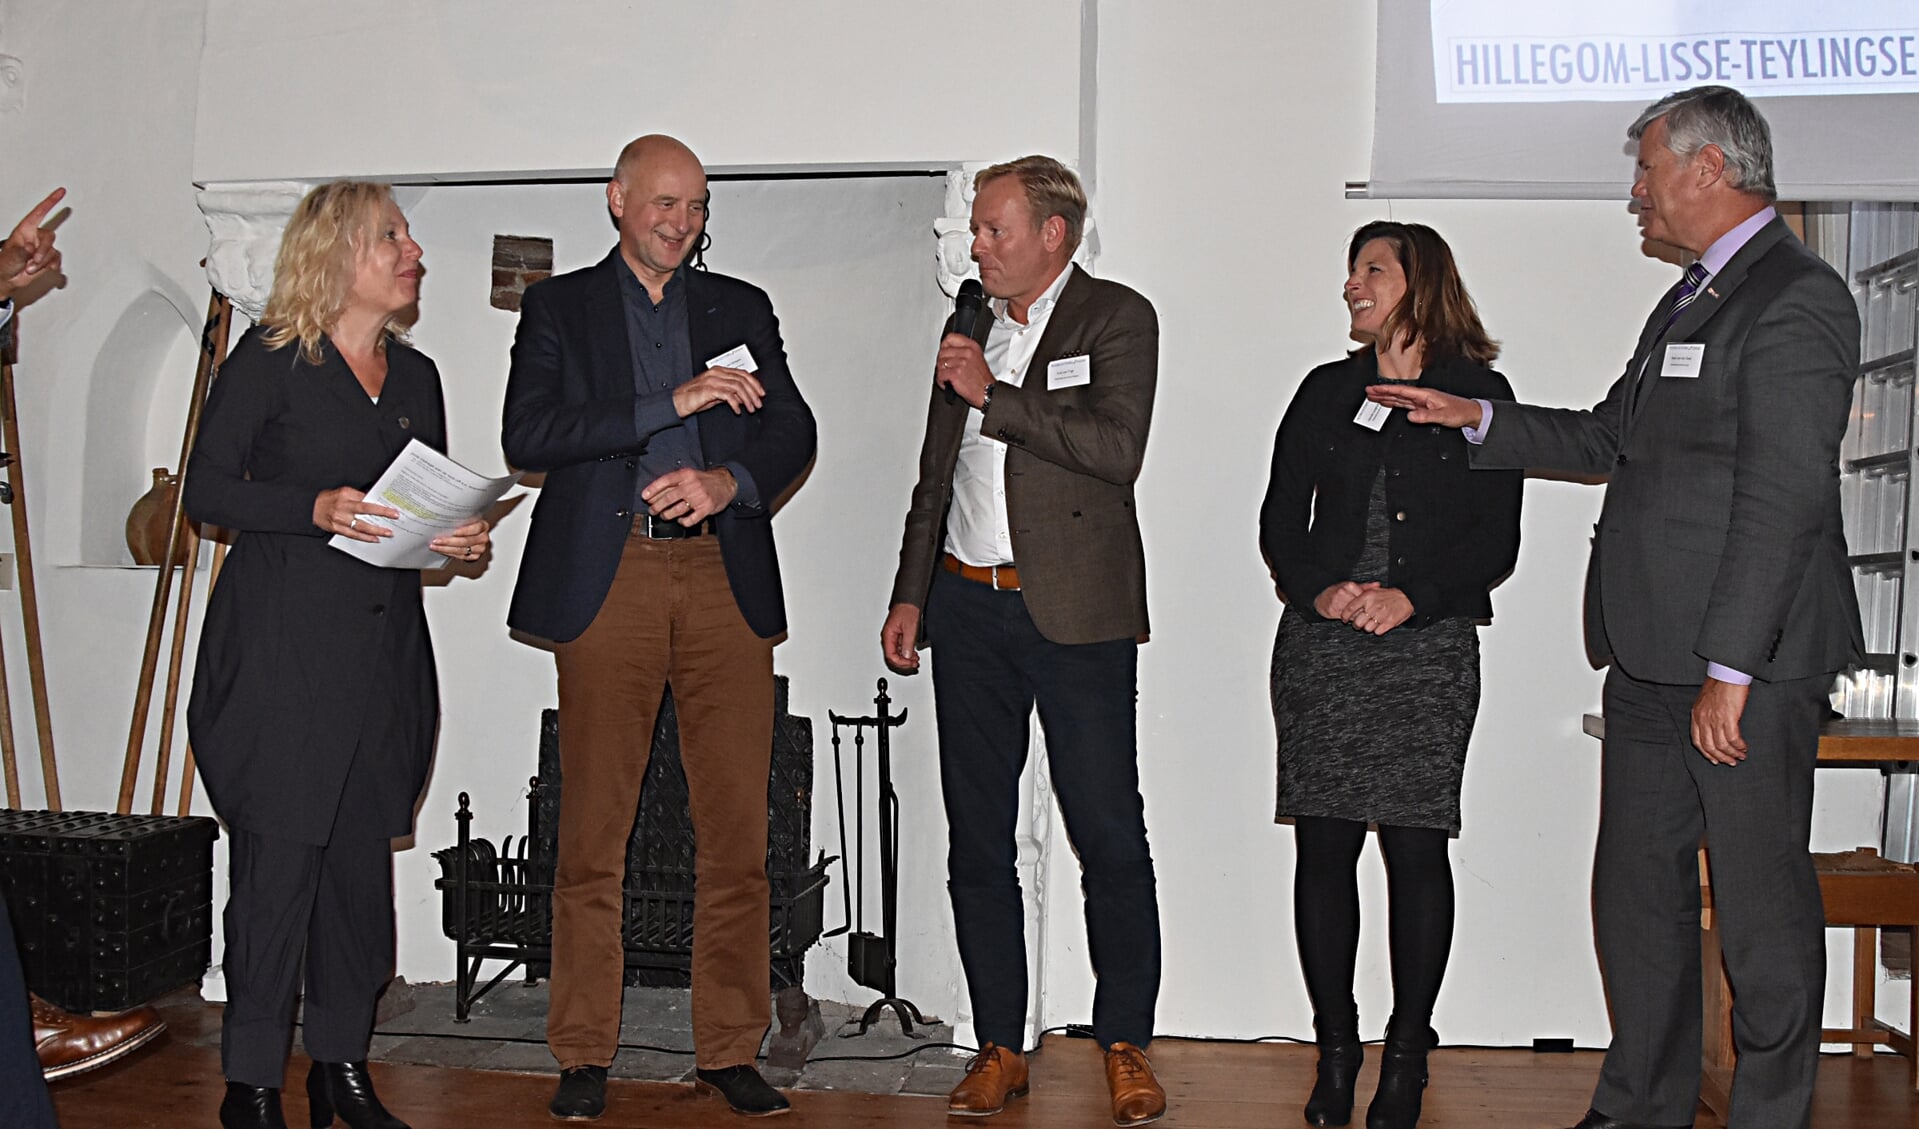 De wethouders van Teylingen, Hillegom en Lisse bij de lancering. | Foto: pr.